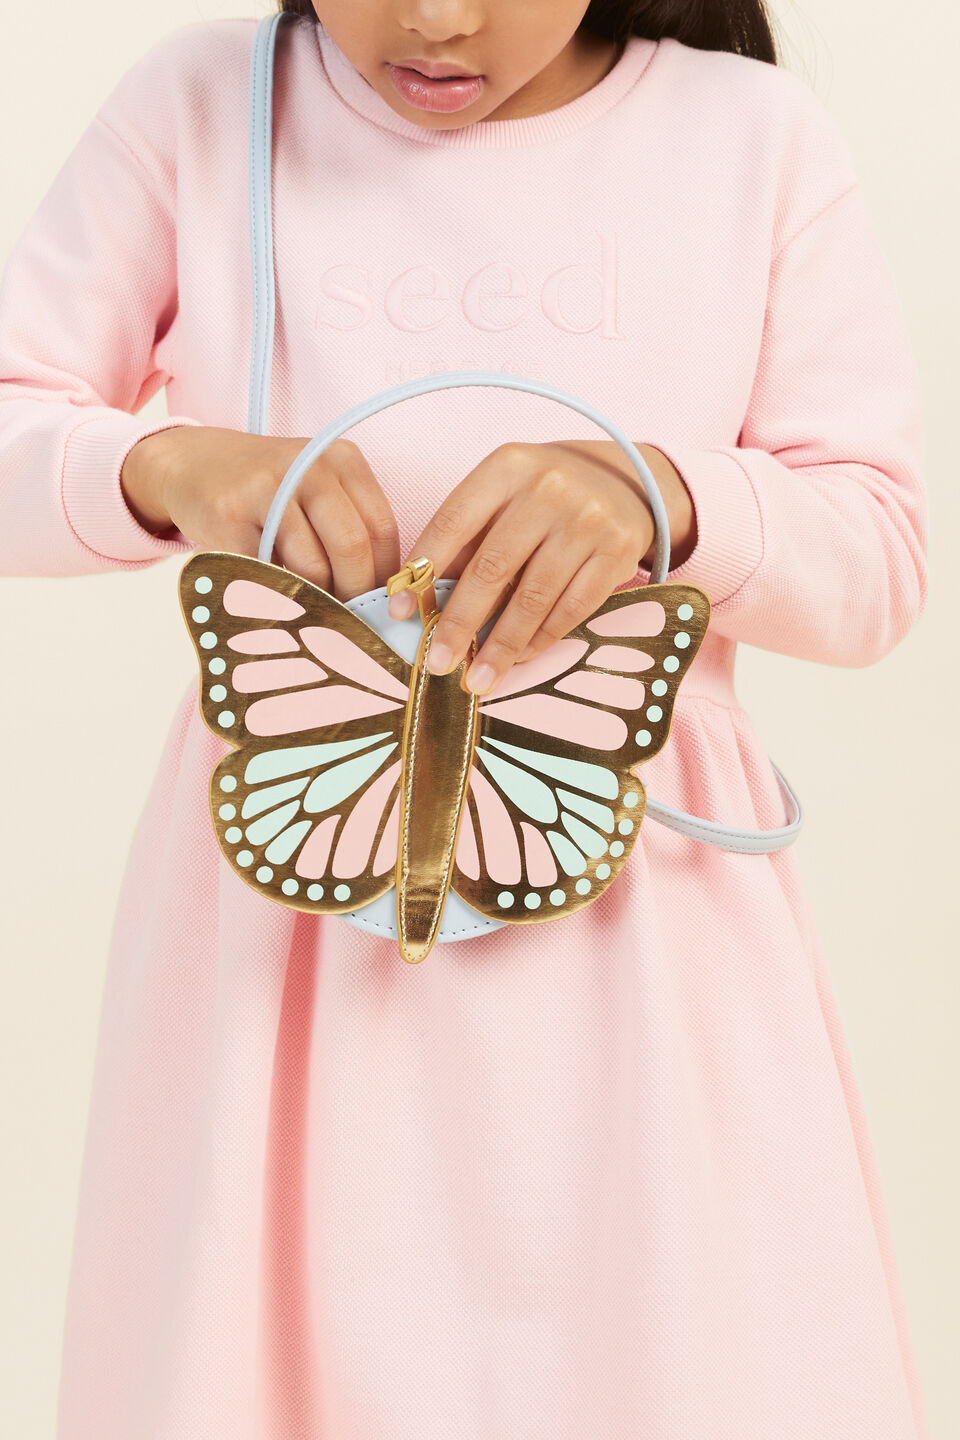 Butterfly Bag  Multi